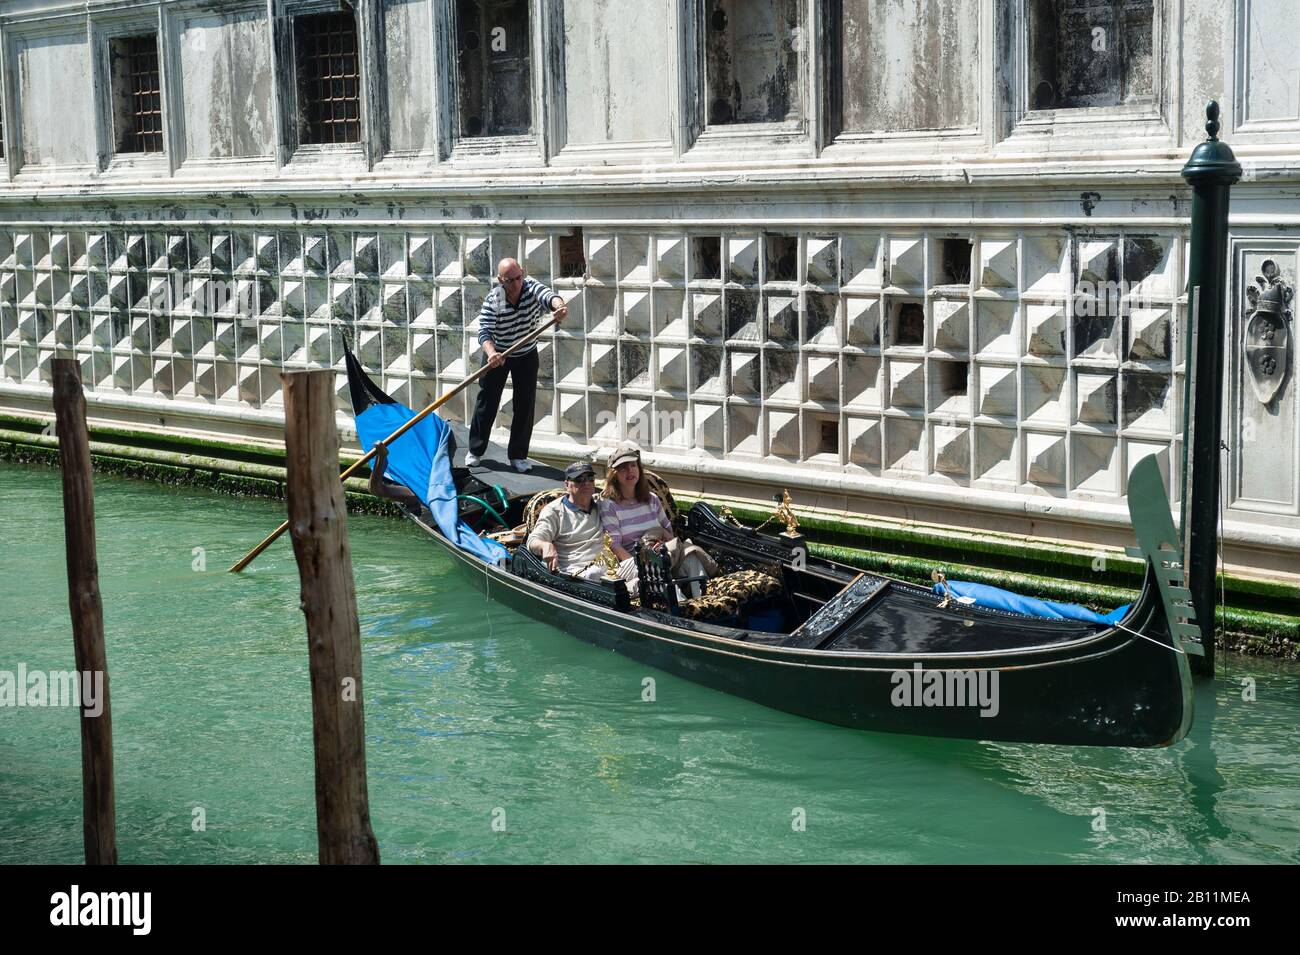 Venedig - 18. APRIL 2013: Ein Venezianer Gondolier manövriert ein Paar Touristen in einer Gondel entlang eines Kanals neben der Sala della Cancelleria Segreta. Stockfoto